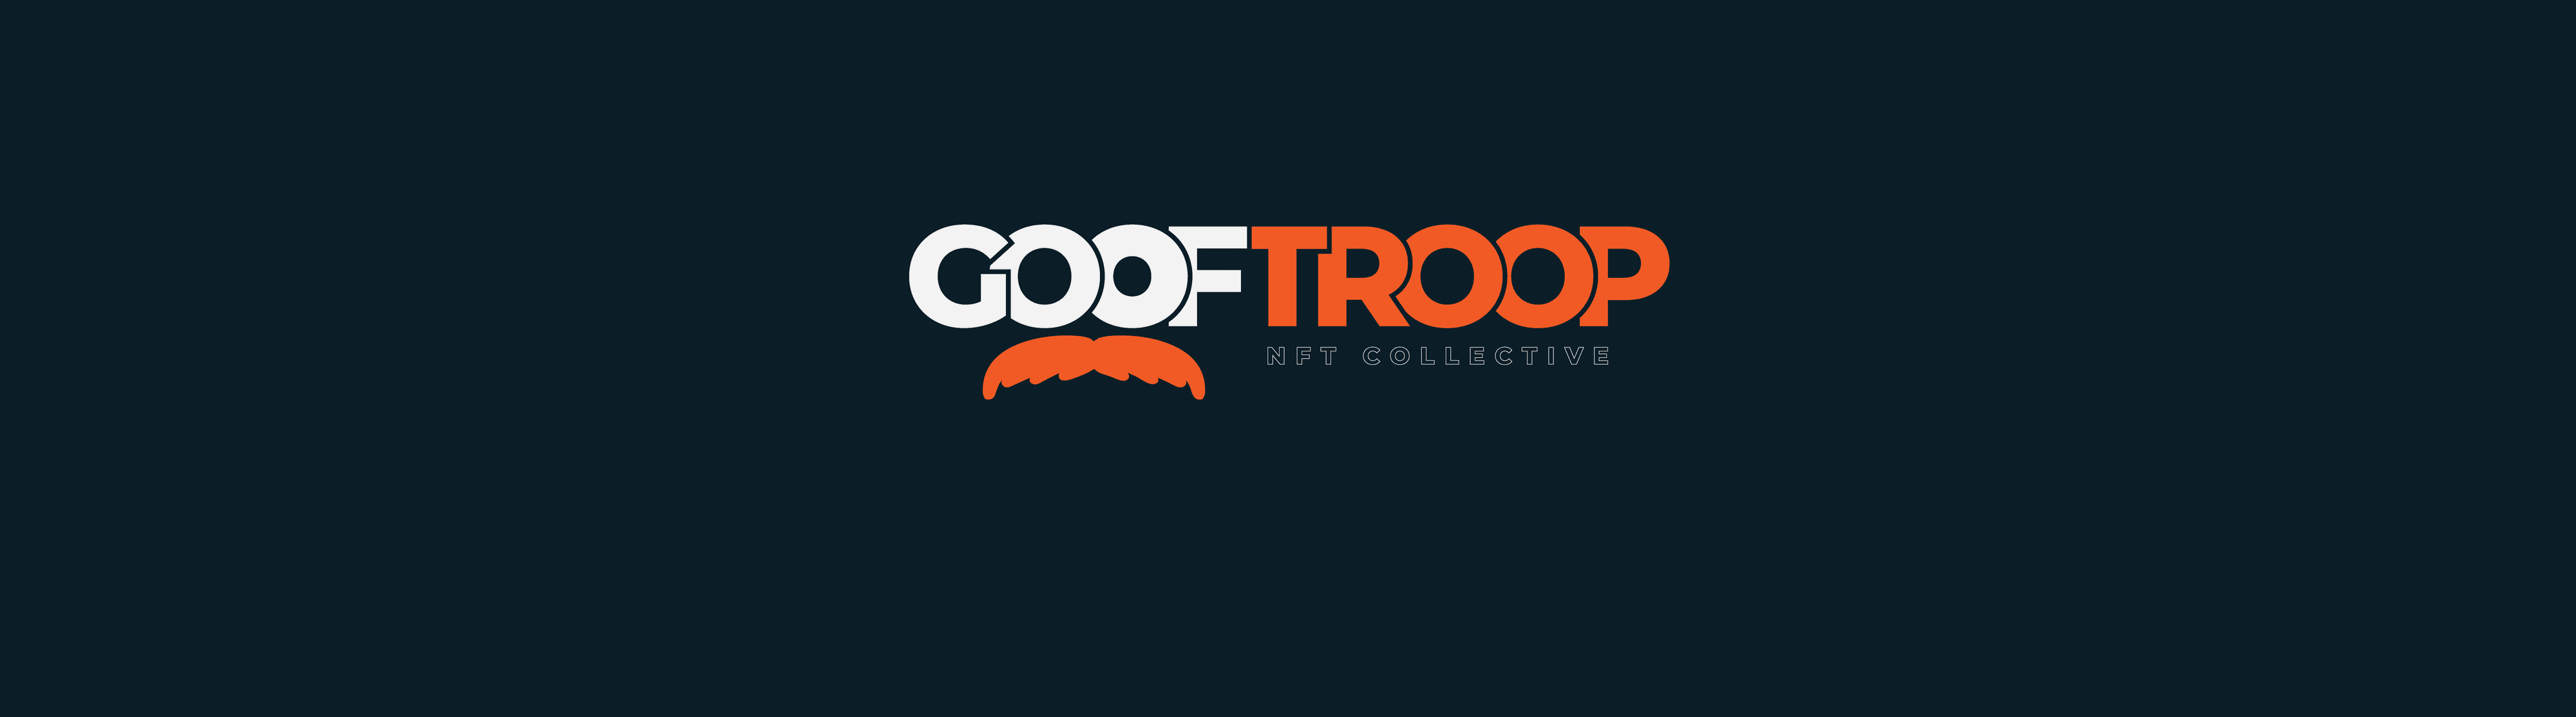 GoofTroop Banner